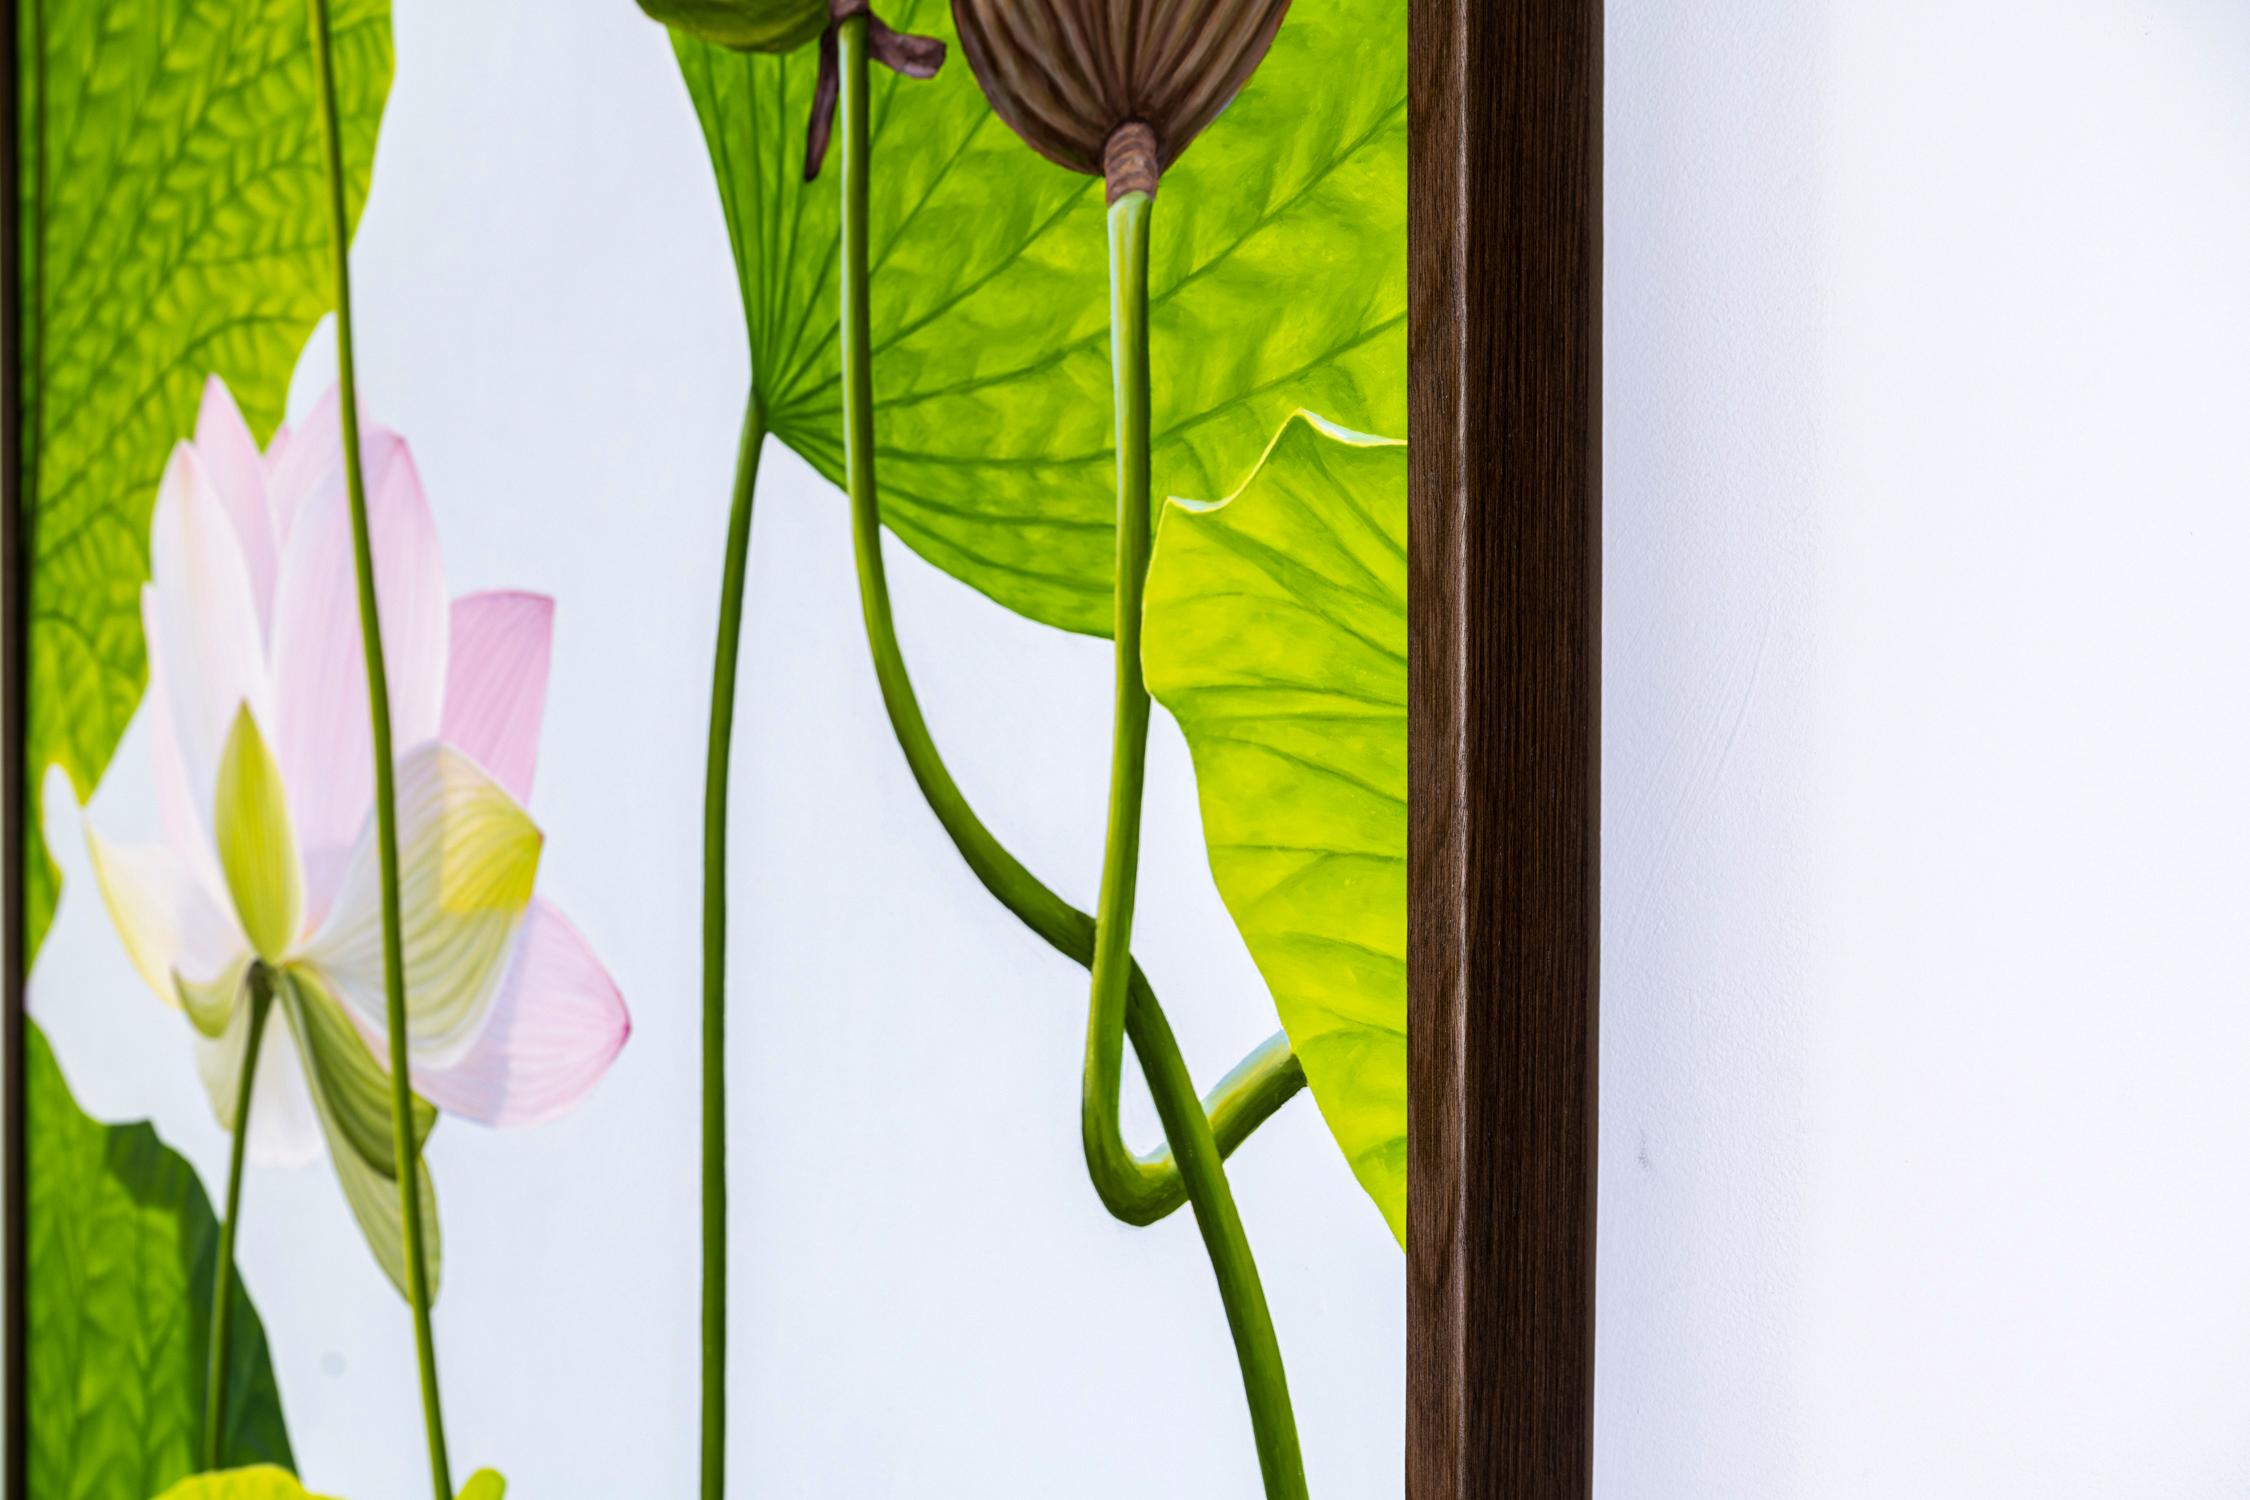 paintings of lotus flowers